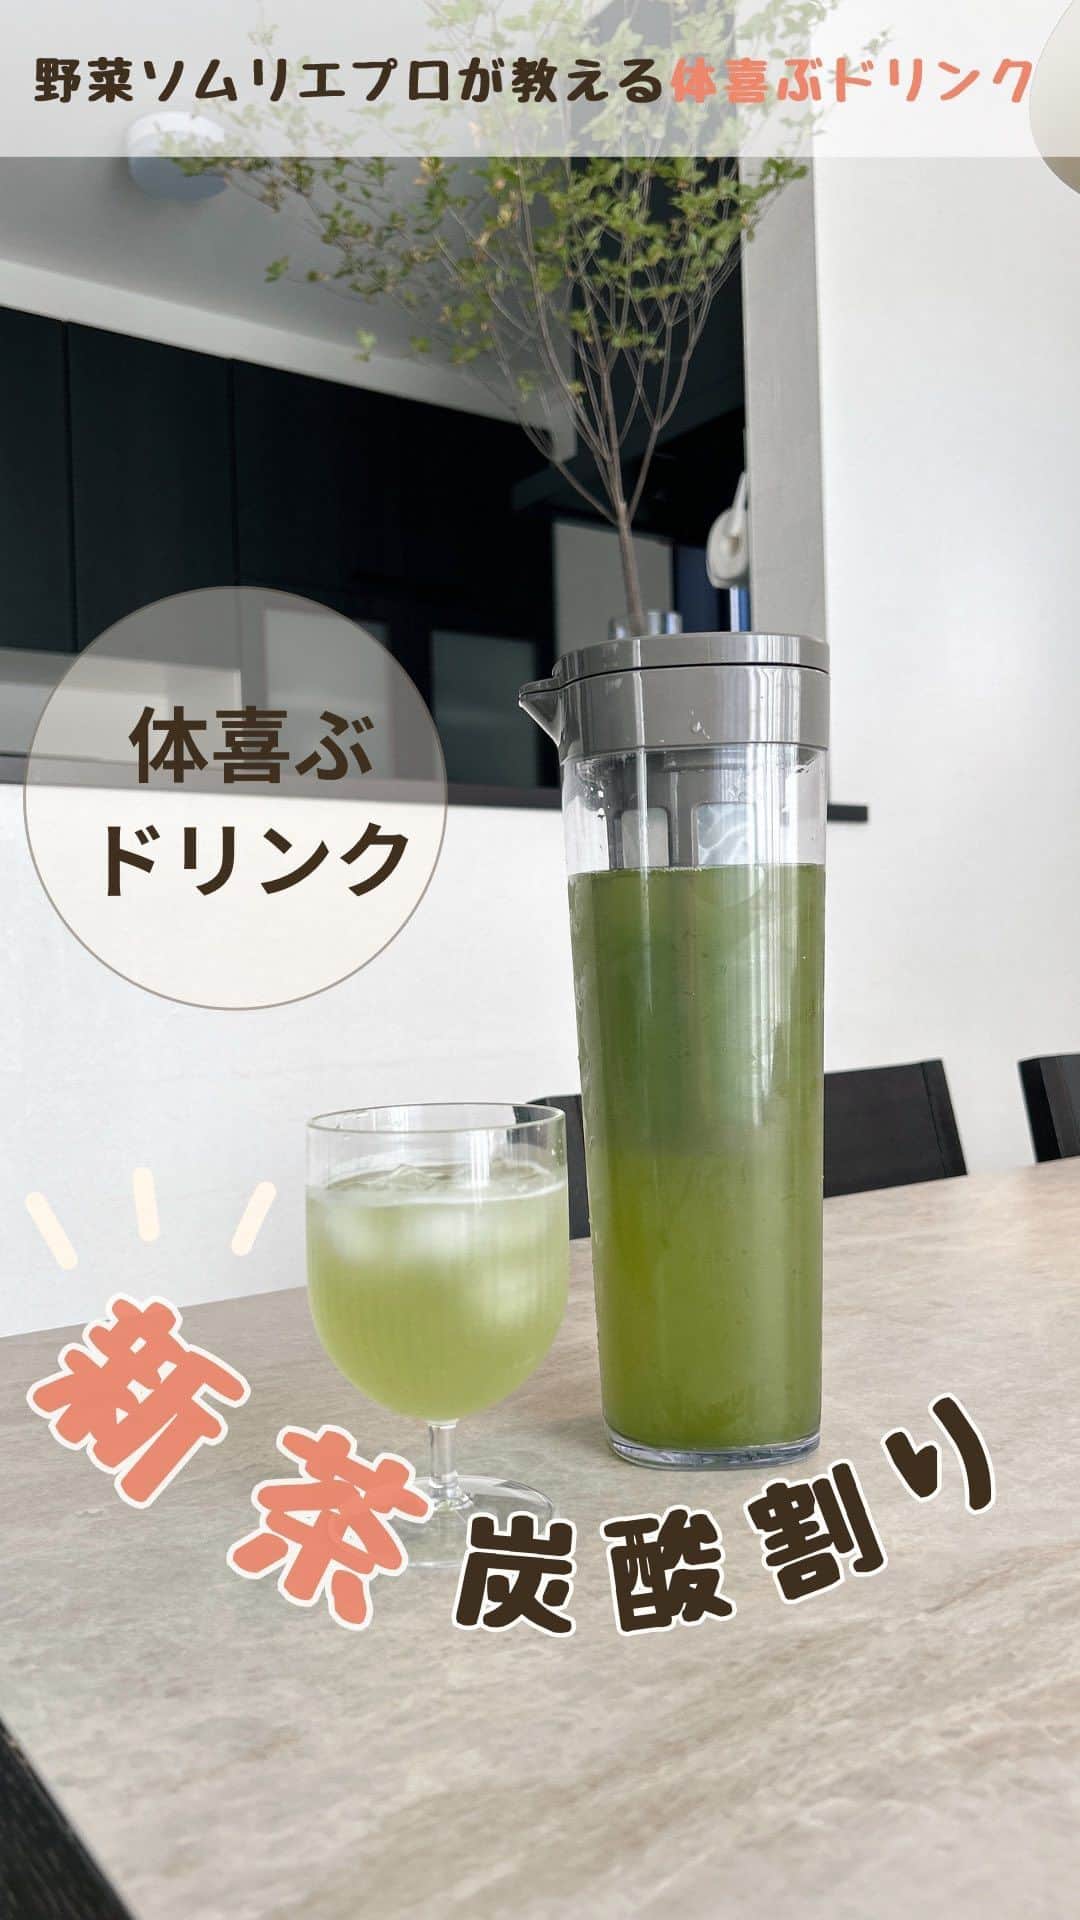 菅野広恵のインスタグラム：「疲労回復にも効果的な healthyでスッキリ爽快な 新茶のアレンジドリンク🌱 今年の夏からハマってました🤭  飲み物って昔は、市販の炭酸飲料を よく飲んでたけど 最近は、発酵ジュースや新茶炭酸水など おうちでアレンジした物をよく飲むように。  何が入ってるかも分かるから 身体も喜んでる気がします☺️  新茶は、　@horiguchiseicha_wakohen さんの新茶🌱 新茶のアレンジレシピなどもよく配信されていて かなり参考にさせて頂いております🫡🌱  🔸作り方 ①水出し茶を作ります。 ②水出し茶をよく冷やしておき、コップに半分注ぎます。 ③炭酸水を半分入れてよく混ぜ合わせたら完成  #新茶　#healthyfood  #緑茶　#疲労回復効果  #睡眠の質  #睡眠の質を高める  #睡眠の質を上げる  #からだにいいこと  #デトックス効果  #ダイエットレシピ  #美肌レシピ」